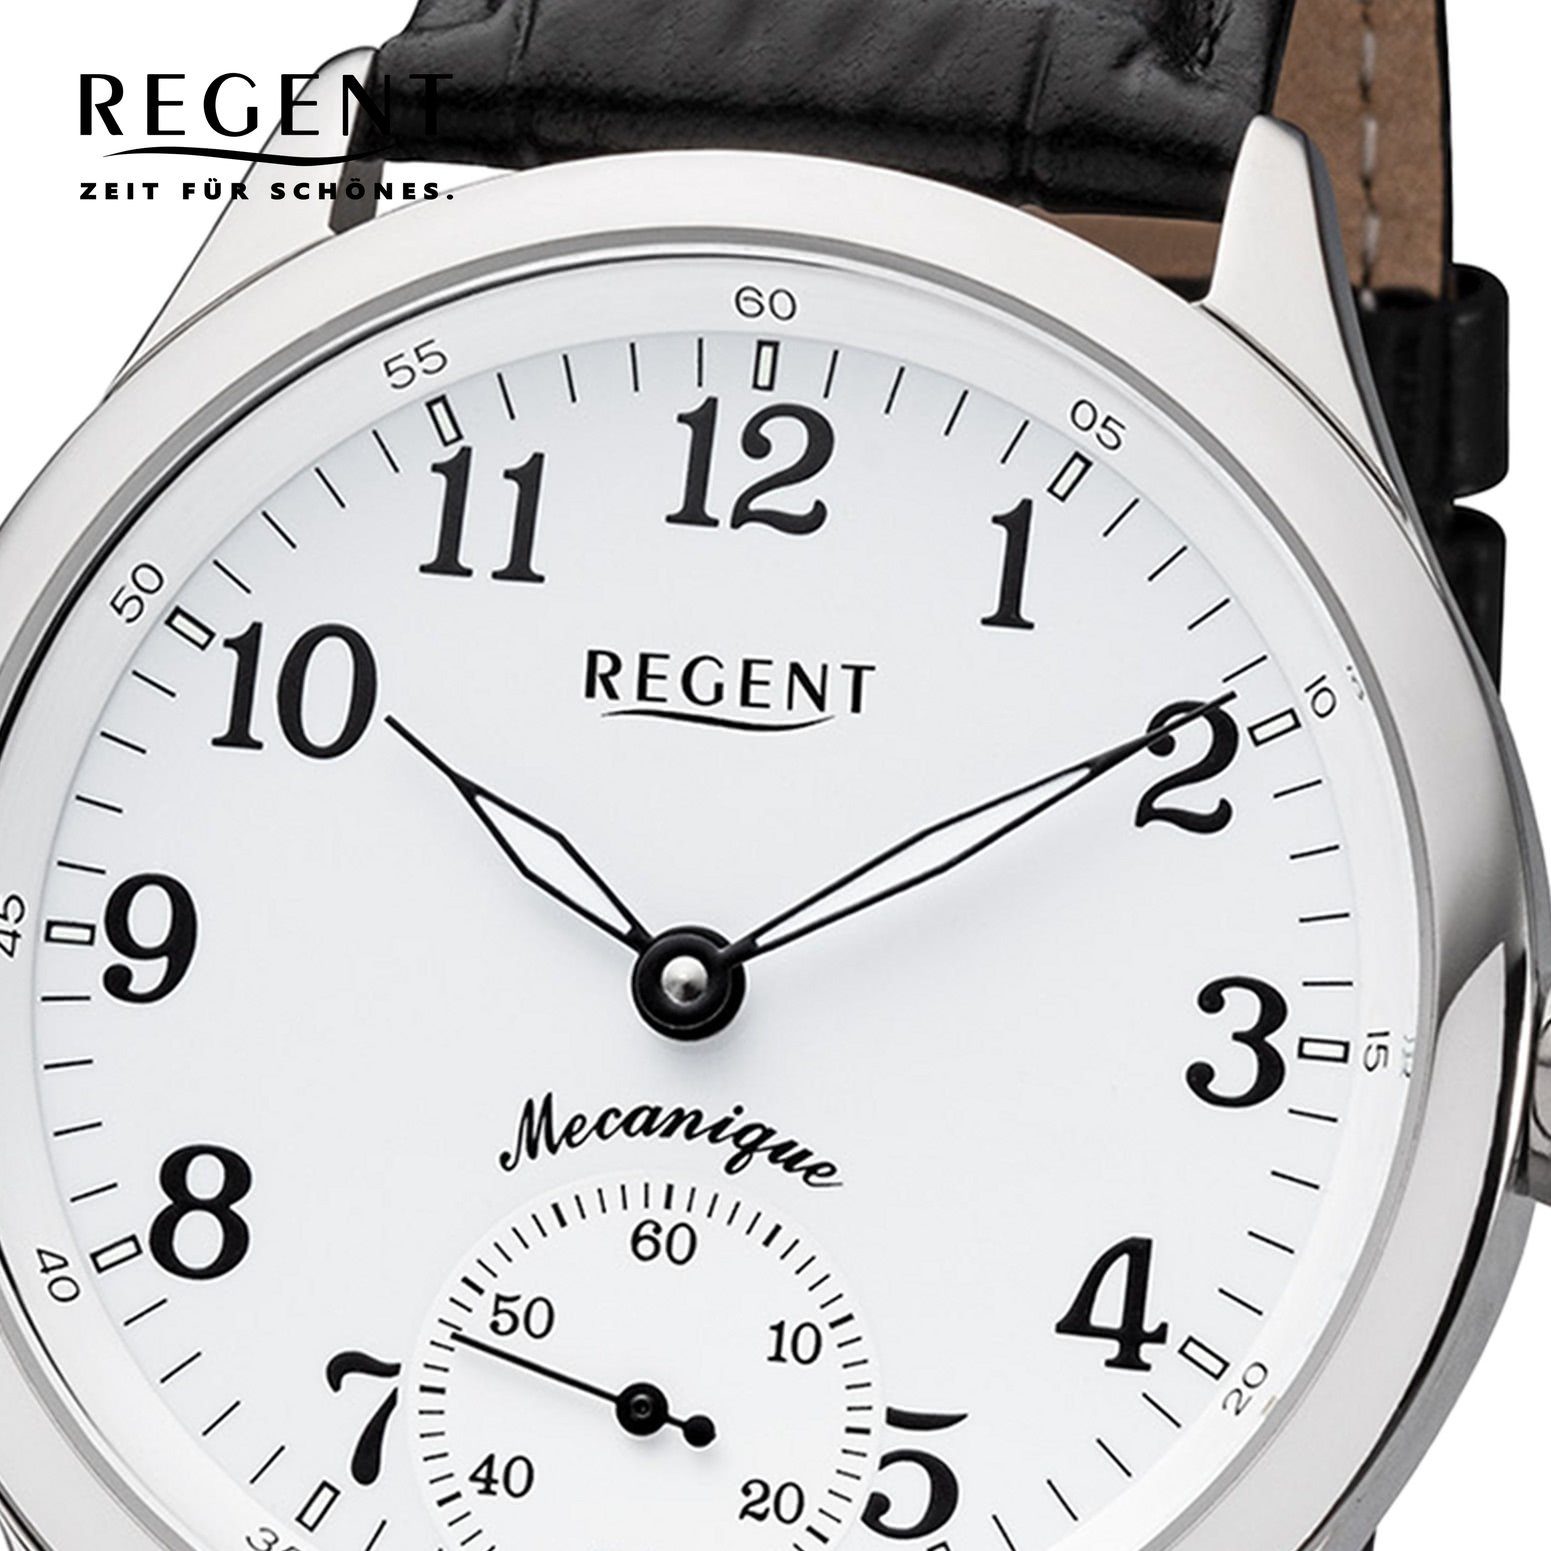 Lederbandarmband Analoganzeige, rund, Quarzuhr Armbanduhr Herren 42,5mm), (ca. Armbanduhr Herren groß Regent Regent